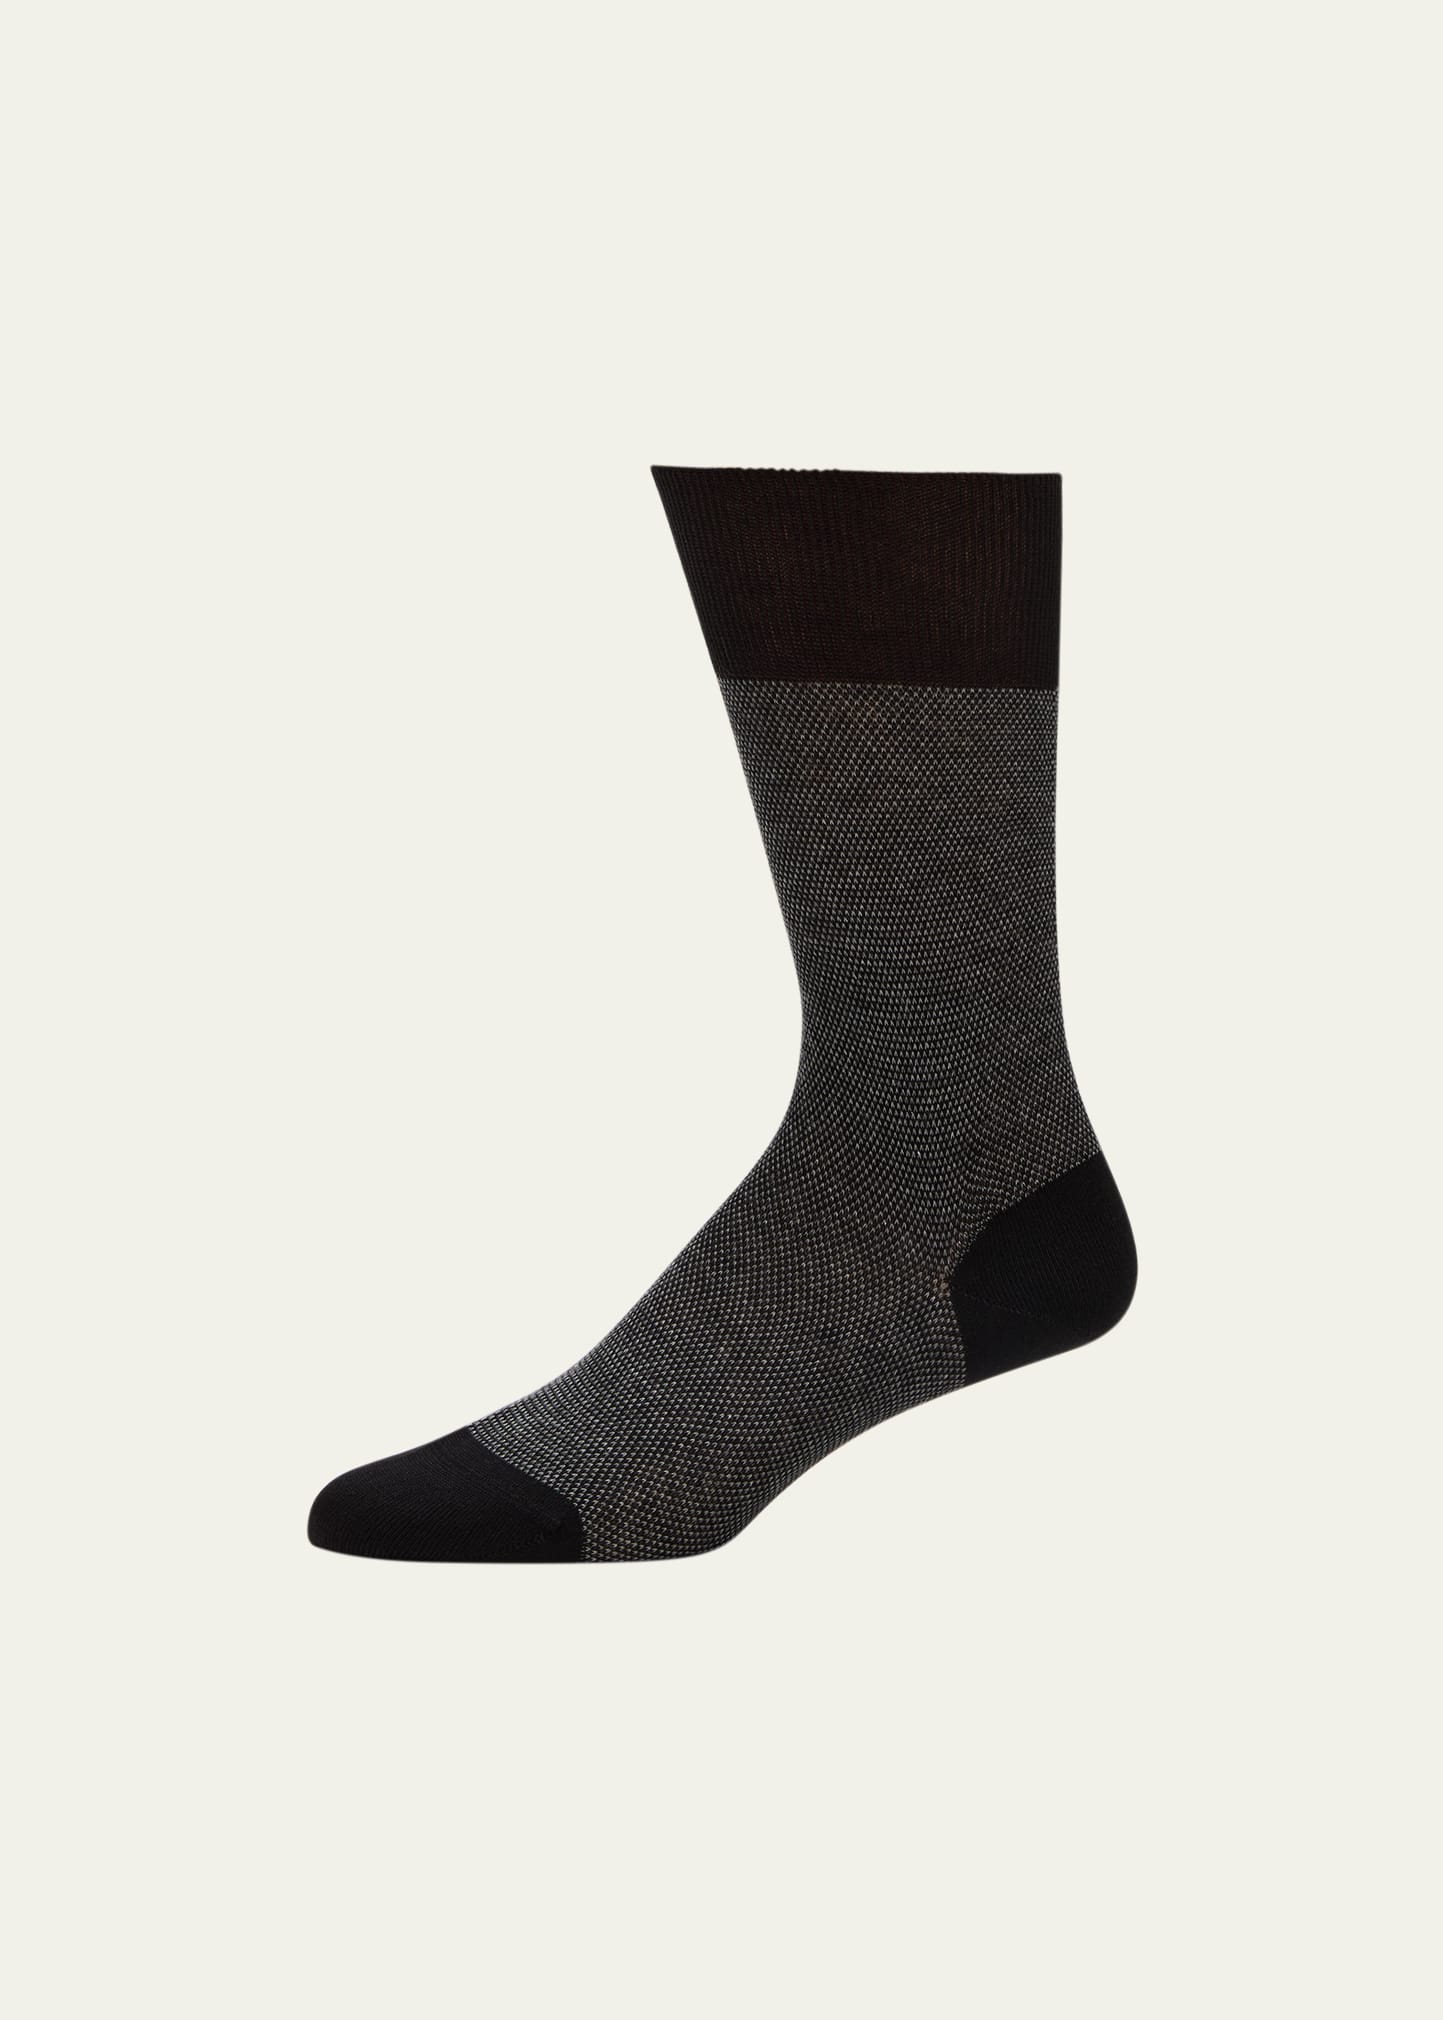 Men's Cotton-Cashmere Blend Crew Socks